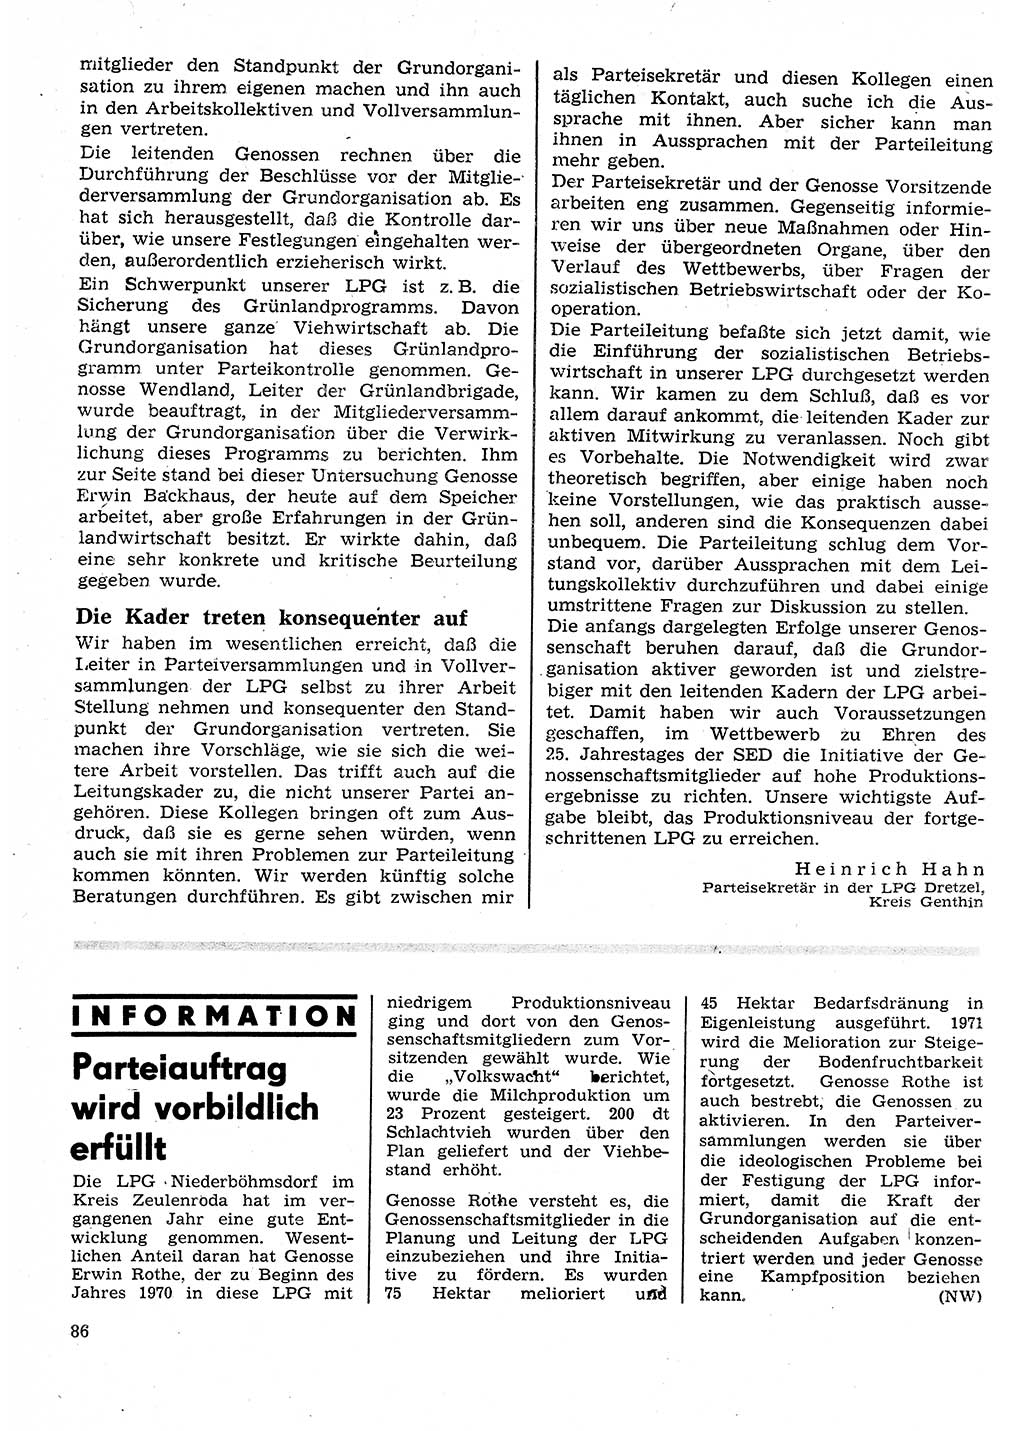 Neuer Weg (NW), Organ des Zentralkomitees (ZK) der SED (Sozialistische Einheitspartei Deutschlands) für Fragen des Parteilebens, 26. Jahrgang [Deutsche Demokratische Republik (DDR)] 1971, Seite 86 (NW ZK SED DDR 1971, S. 86)